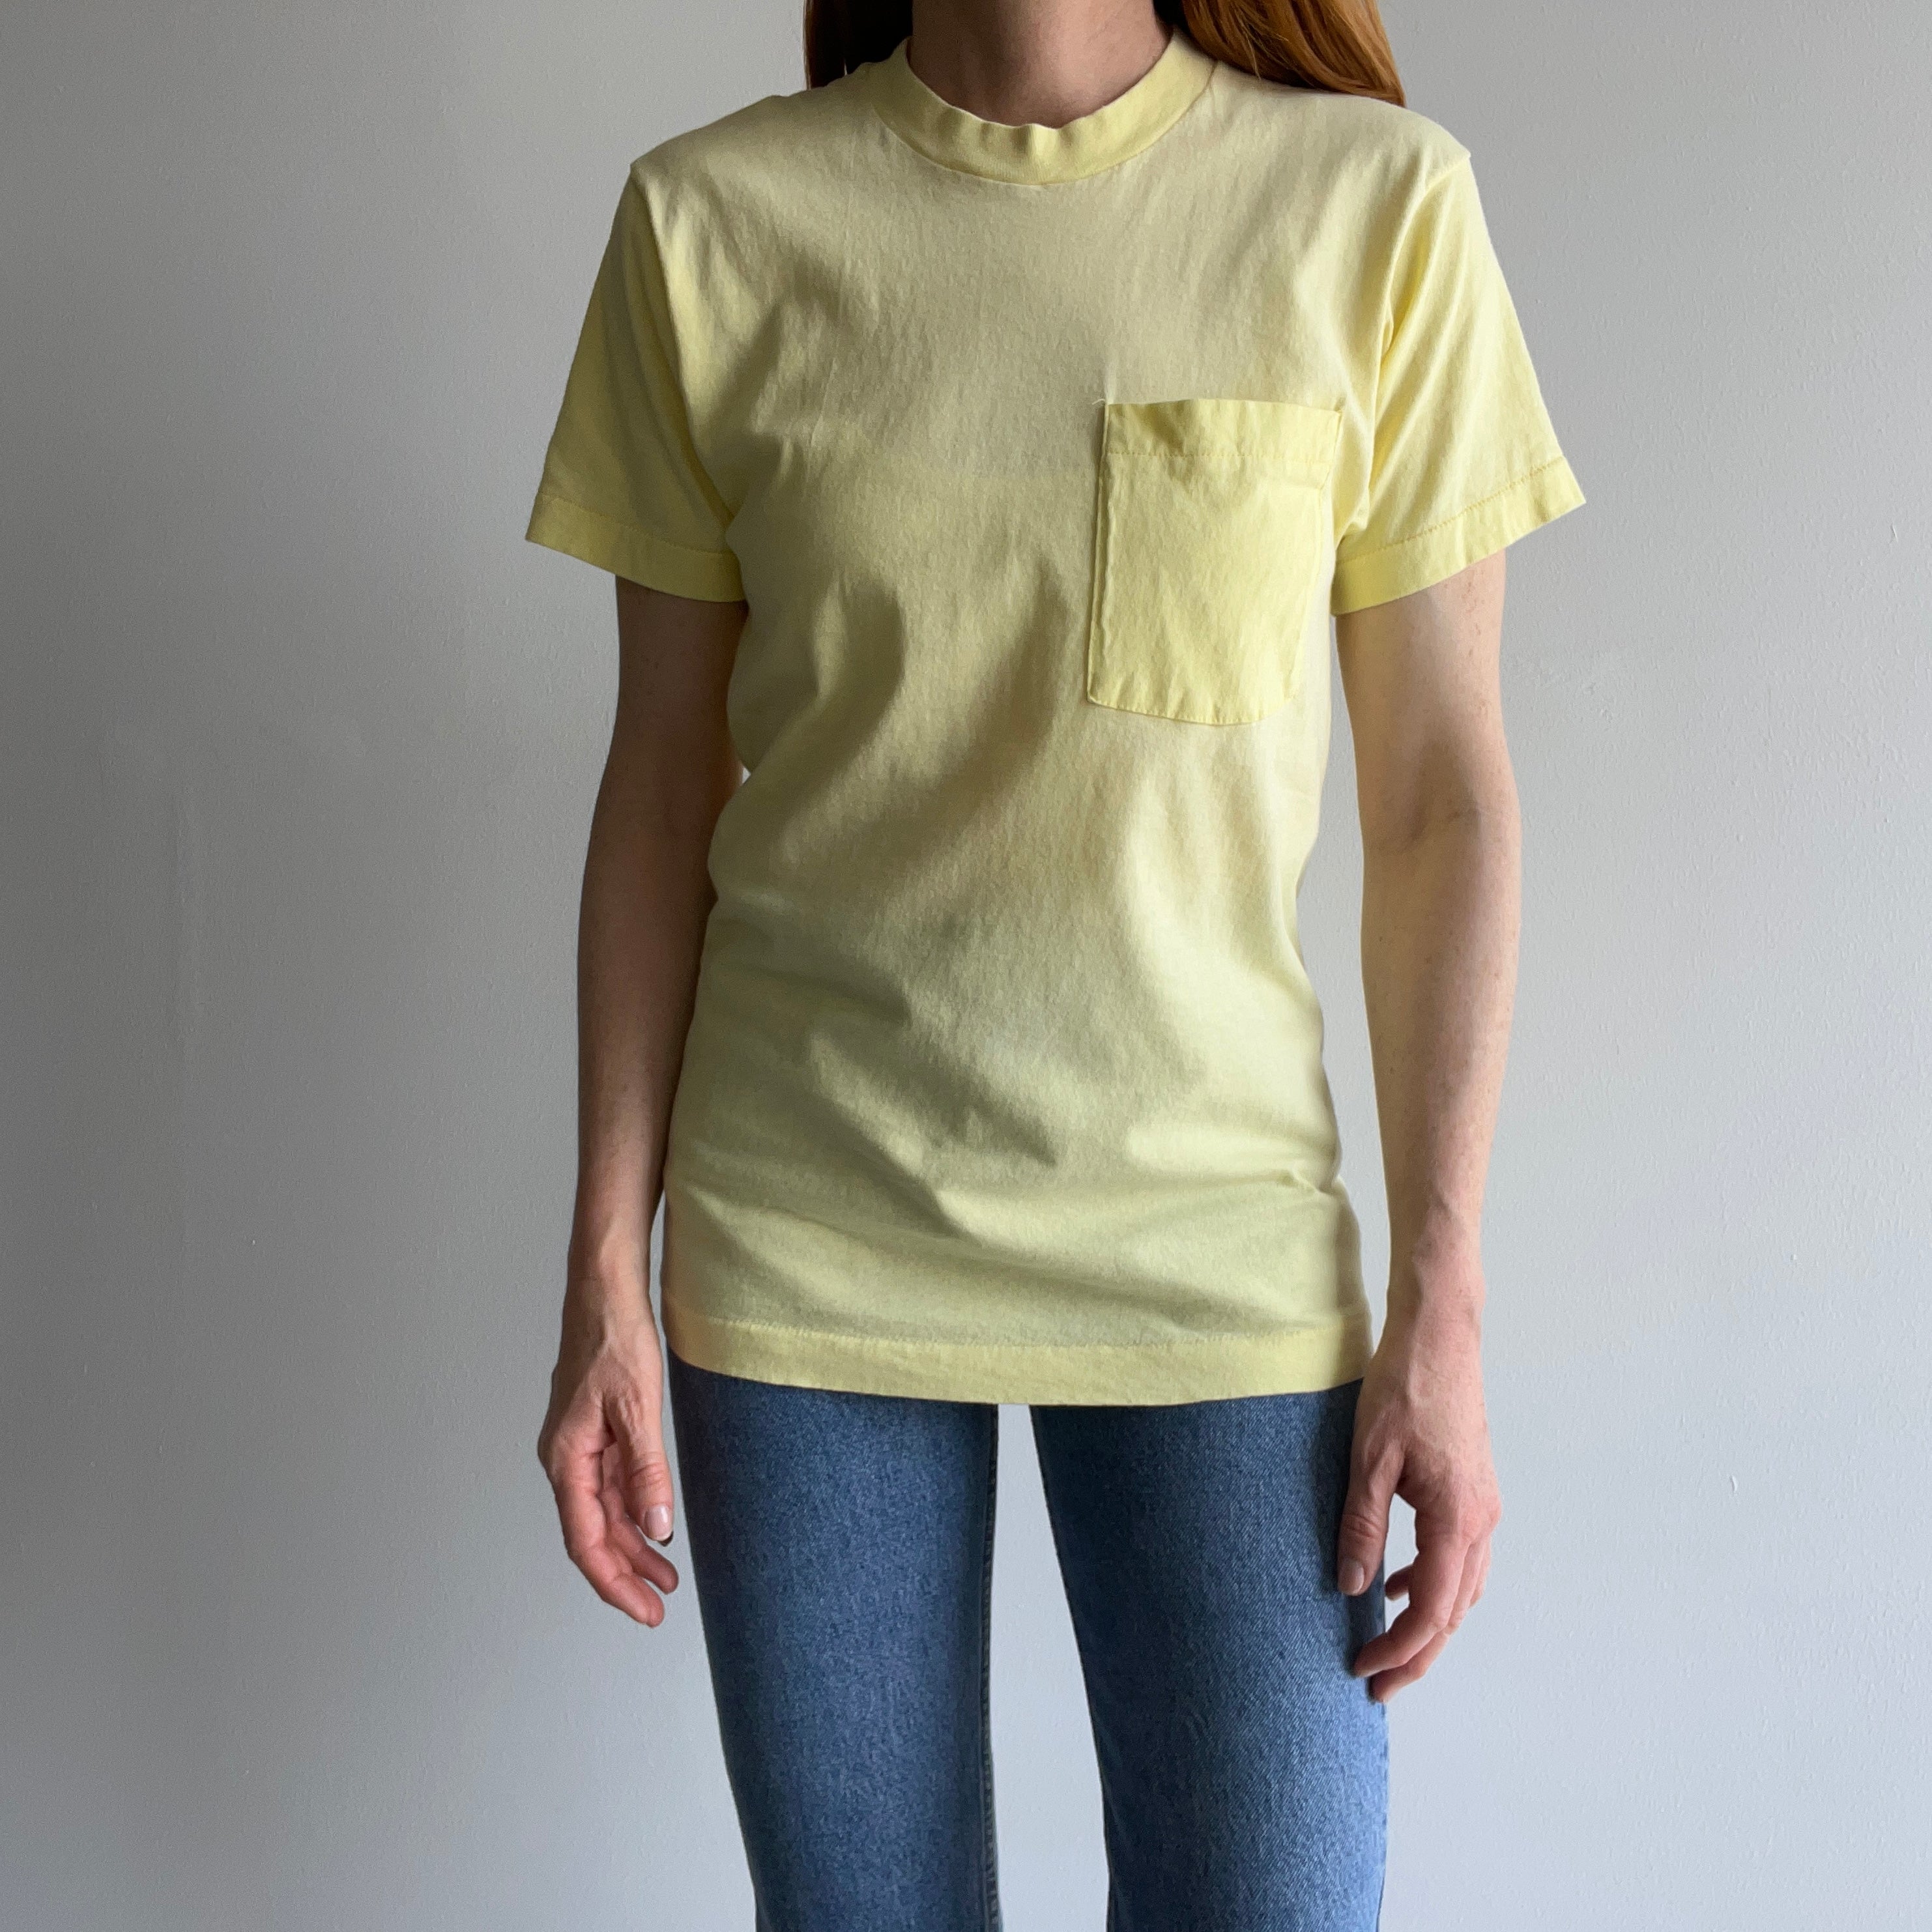 1980s Lemon Meringue FOTL Selvedge Pocket T-Shirt